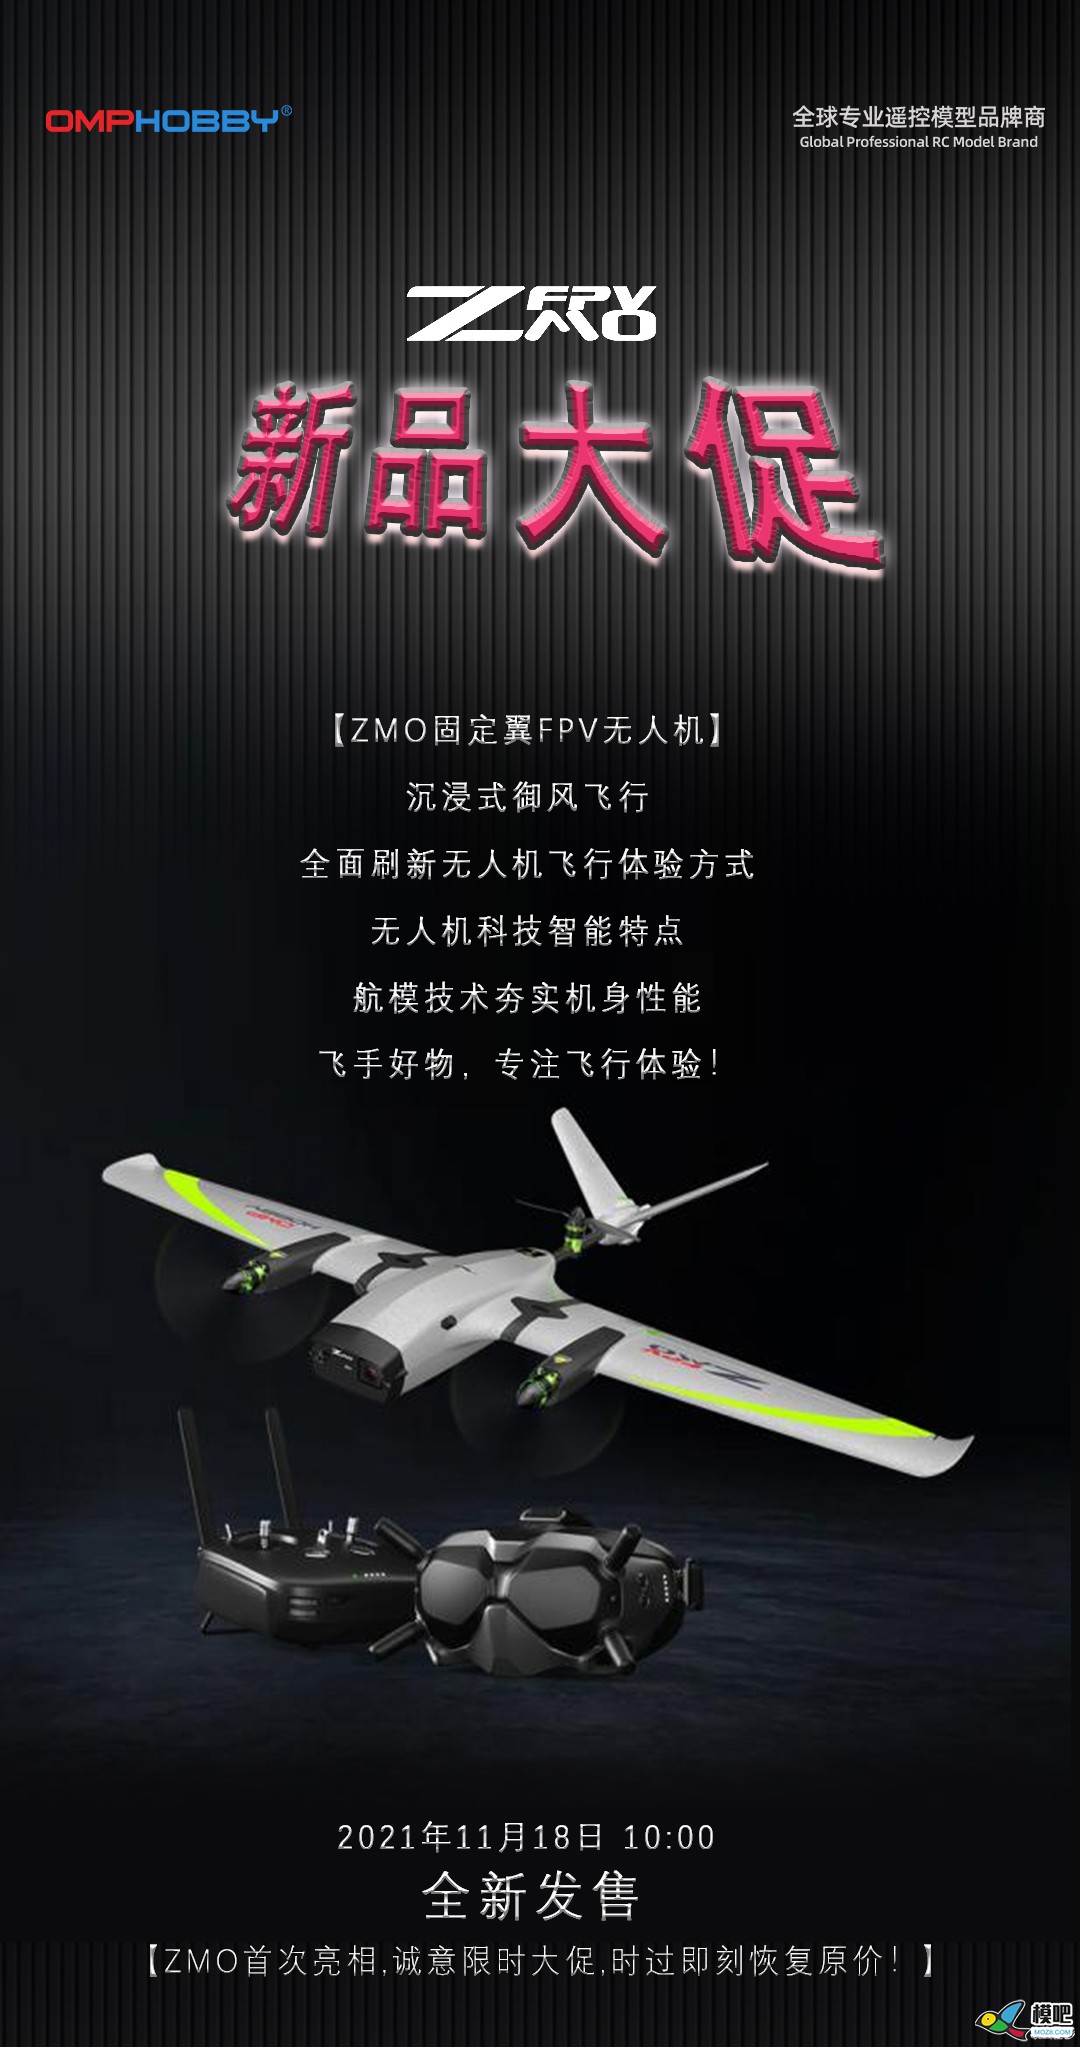 潮玩无人机-垂起固定翼FPV【ZMO】| 全新发售 无人机,航模,固定翼,飞手,飞行体验 作者:边锋领域 2903 